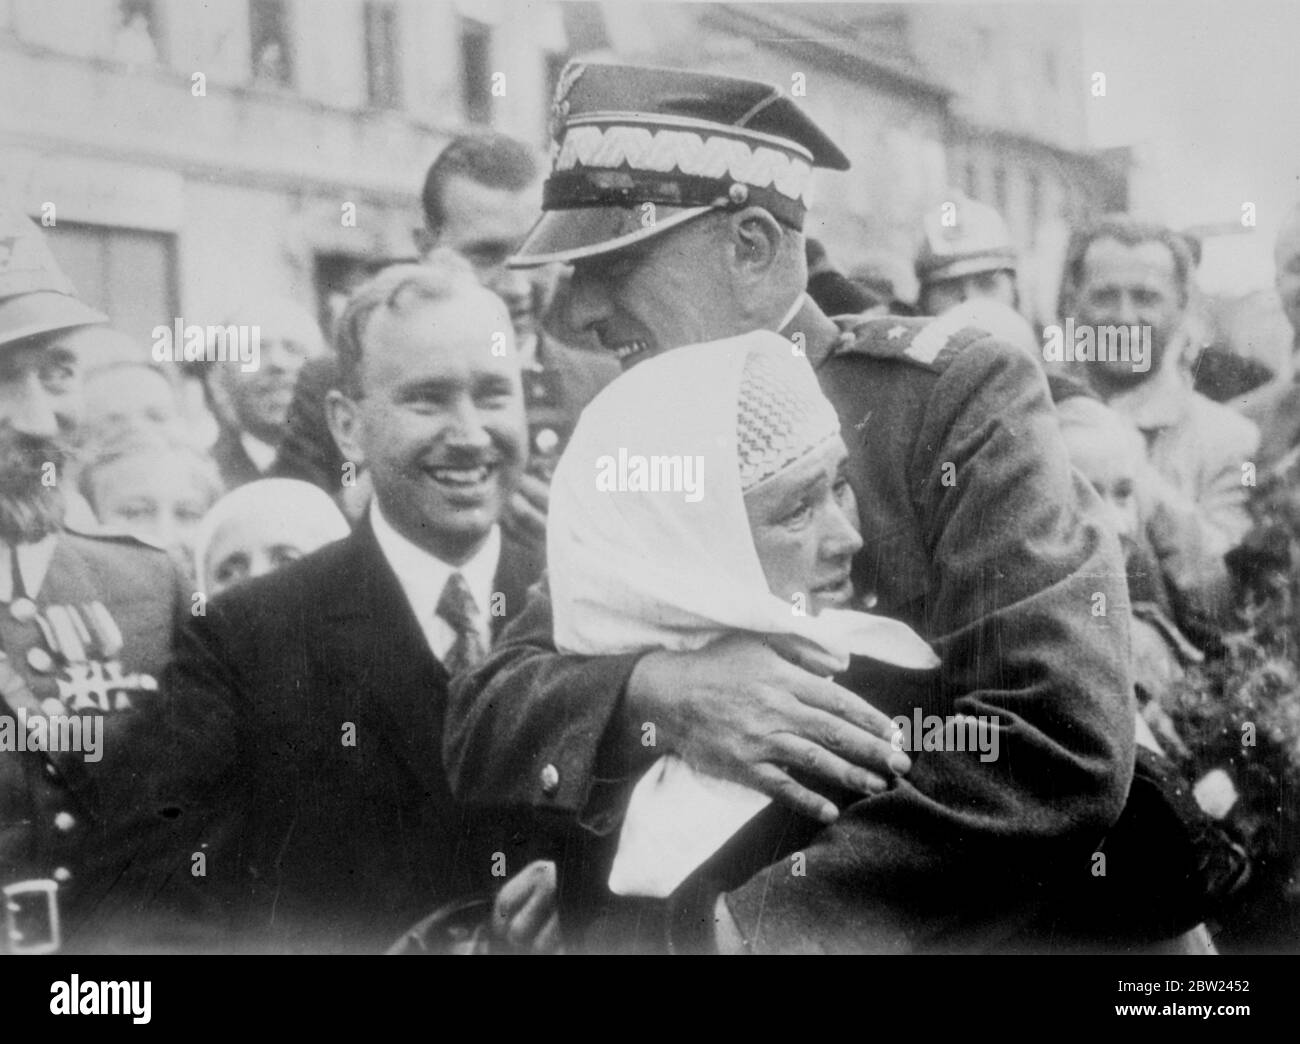 Le général bortnowski de l'armée polonaise qui s'est accroché aux bras autour d'une paysanne polonaise qui l'a accueilli avec des larmes de joie lorsque les forces polonaises ont occupé Teschen, la zone cédée à la Pologne par la Tchécoslovaquie en conformité avec un ultimatum. 7 octobre 1938 Banque D'Images